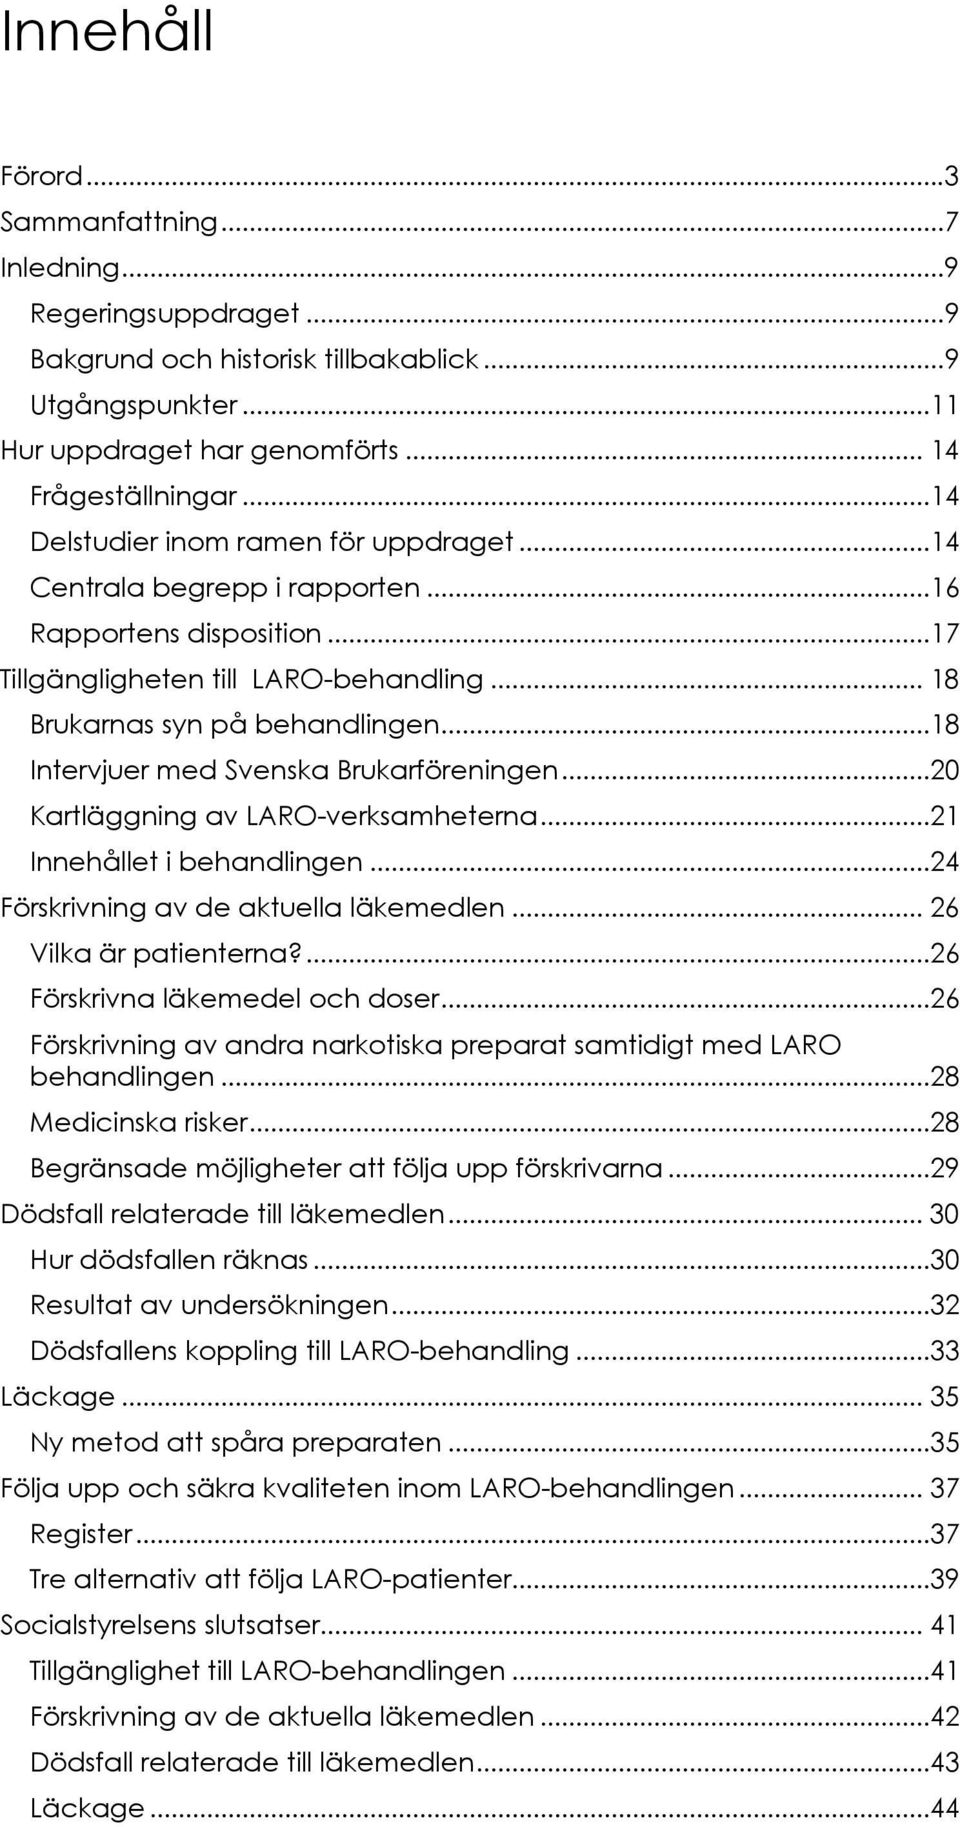 ..18 Intervjuer med Svenska Brukarföreningen...20 Kartläggning av LARO-verksamheterna...21 Innehållet i behandlingen...24 Förskrivning av de aktuella läkemedlen... 26 Vilka är patienterna?